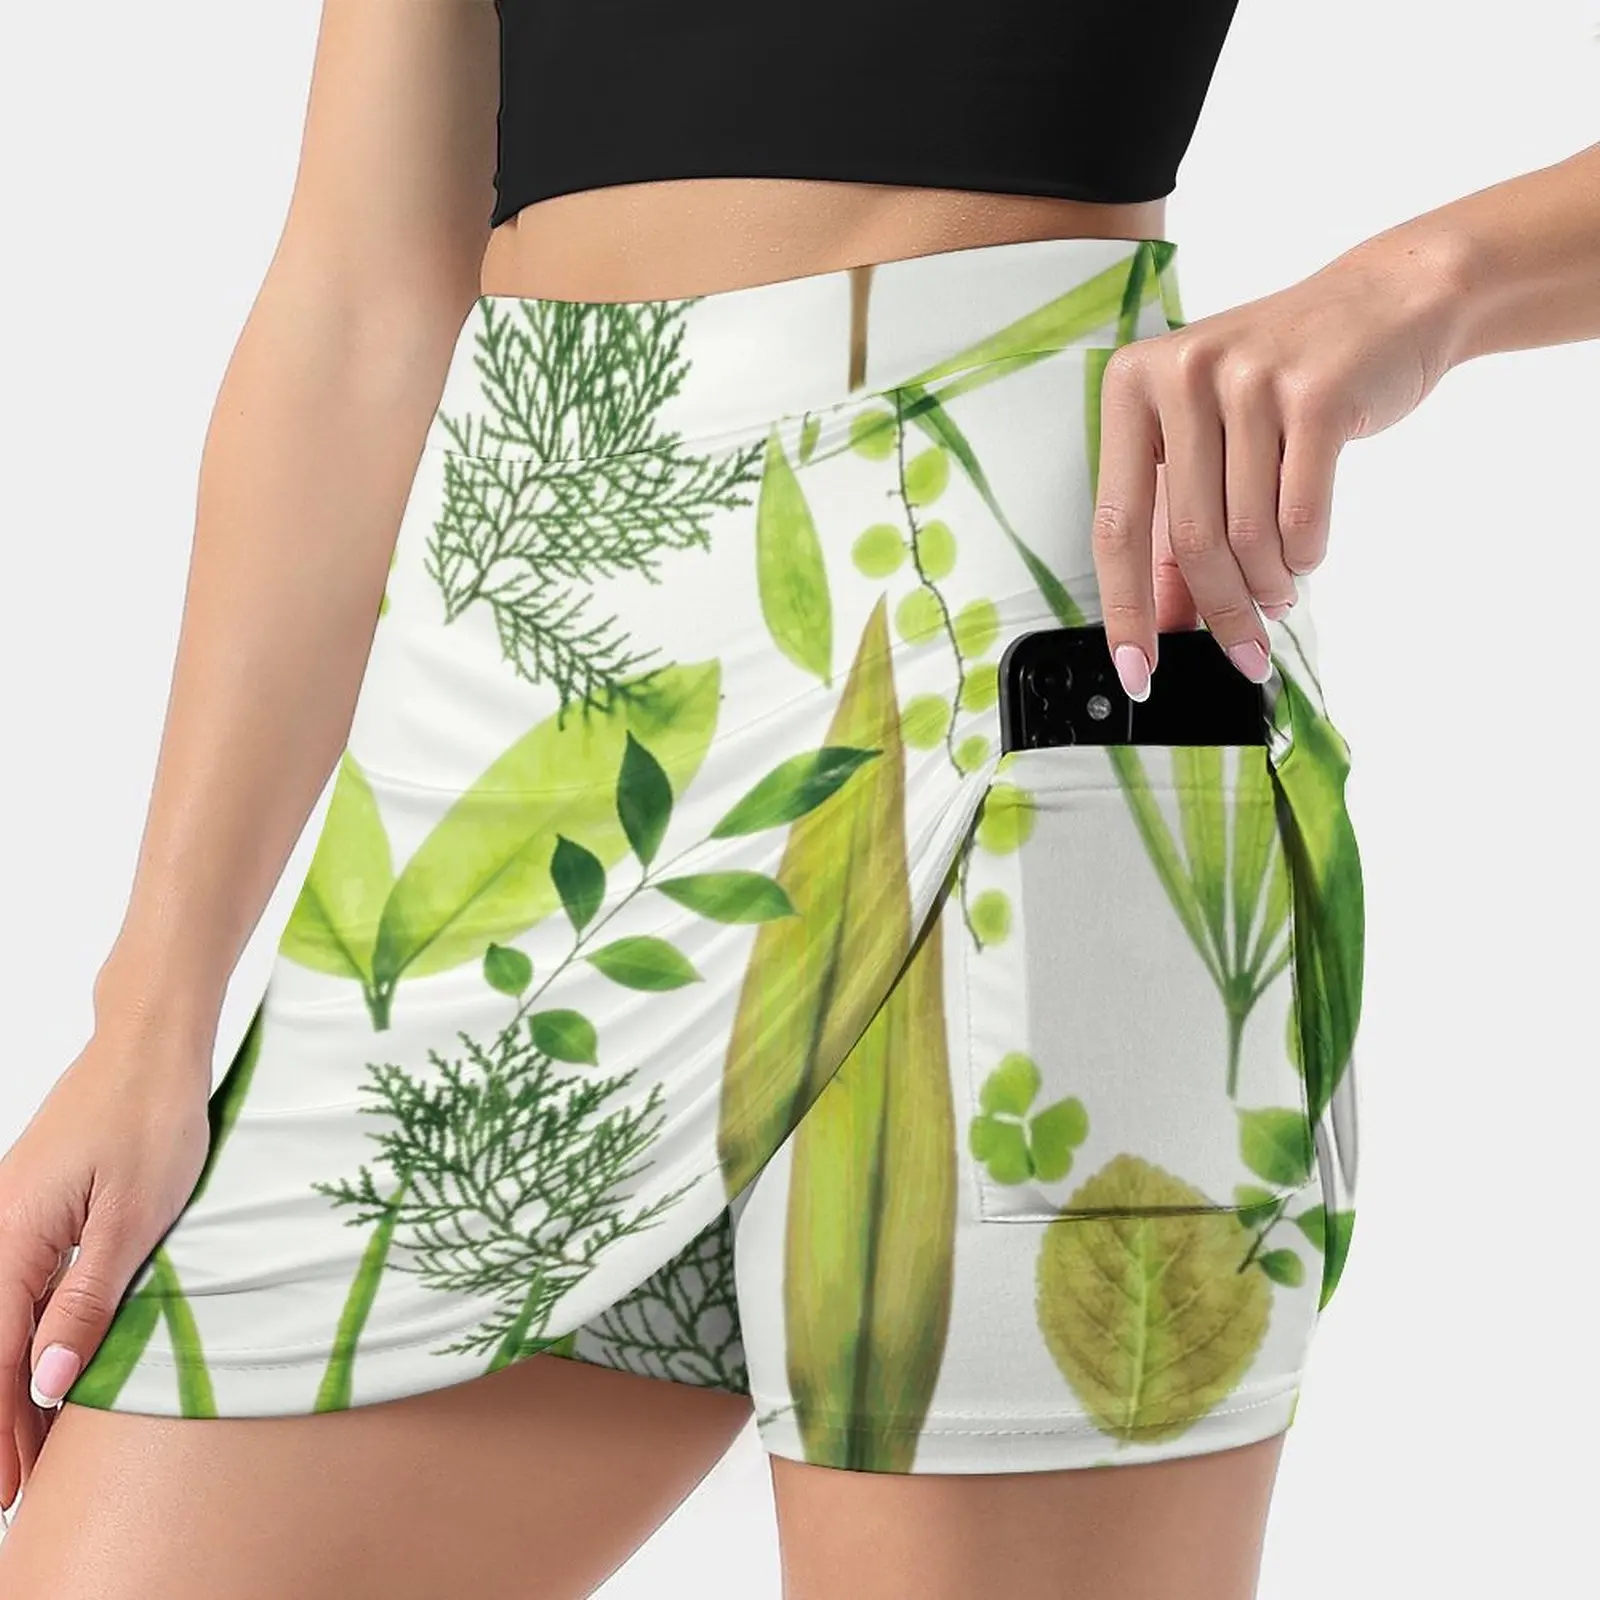 

Женская Спортивная юбка с листьями, для тенниса, гольфа, танцев, фитнеса, бега, йоги, ботаническая, с растительными листьями и зелеными листь...